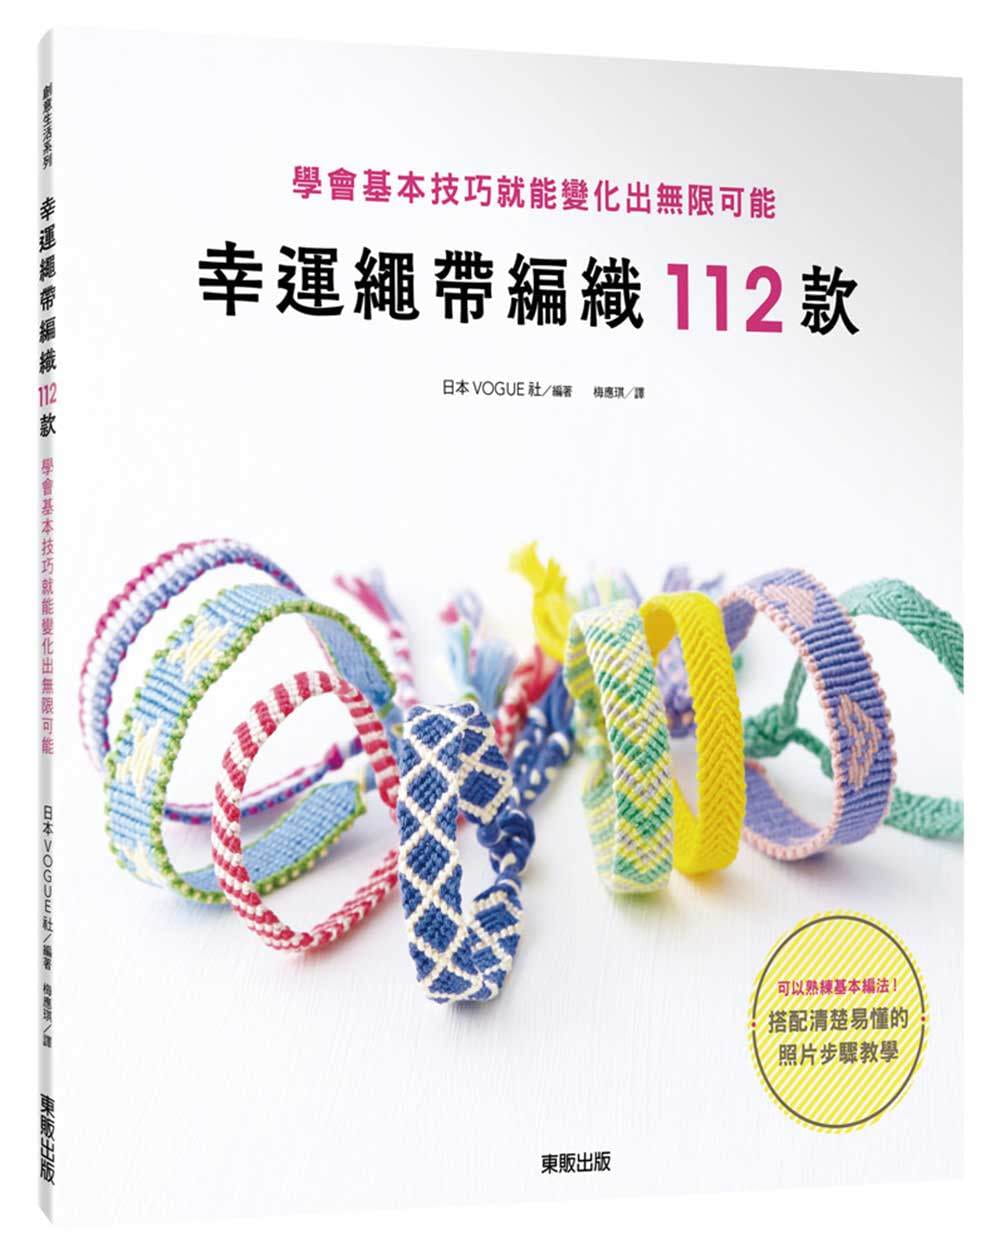 预售正版 原版进口图书 幸运绳带编织112款学会基本技巧就能变化出无限可能 中国台湾东贩 生活风格